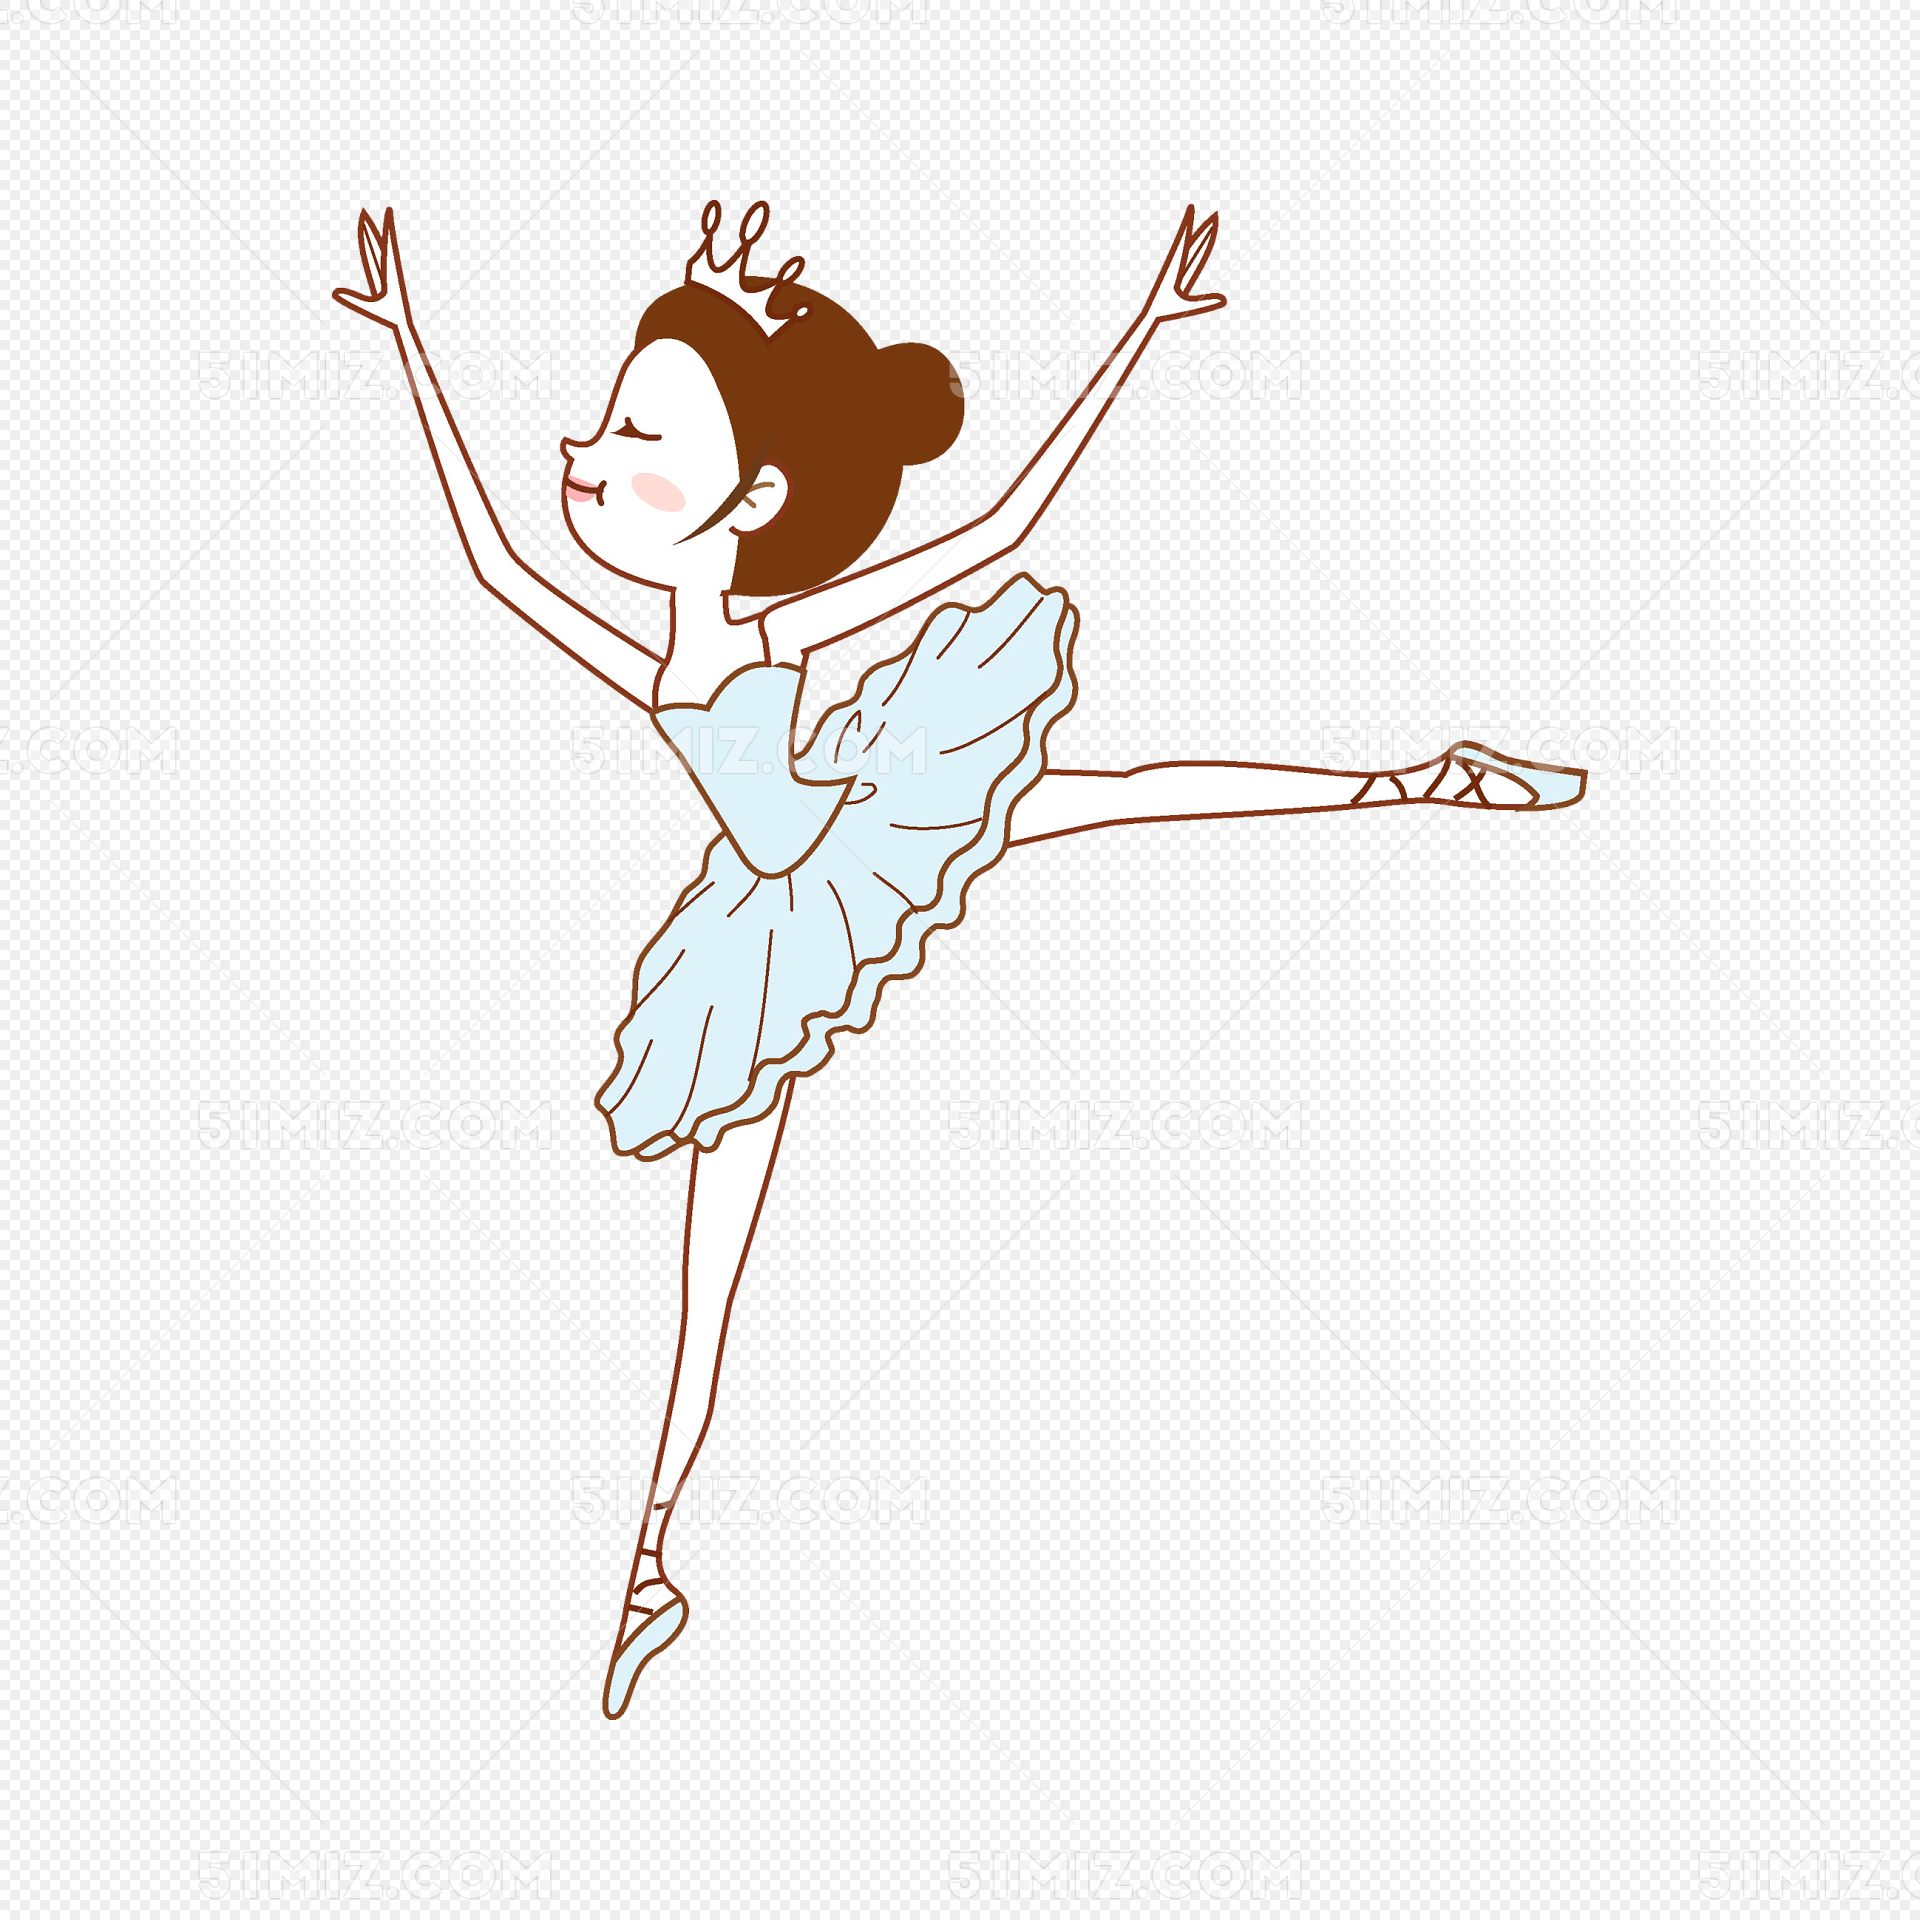 卡通女孩跳舞免抠图图片素材免费下载 - 觅知网